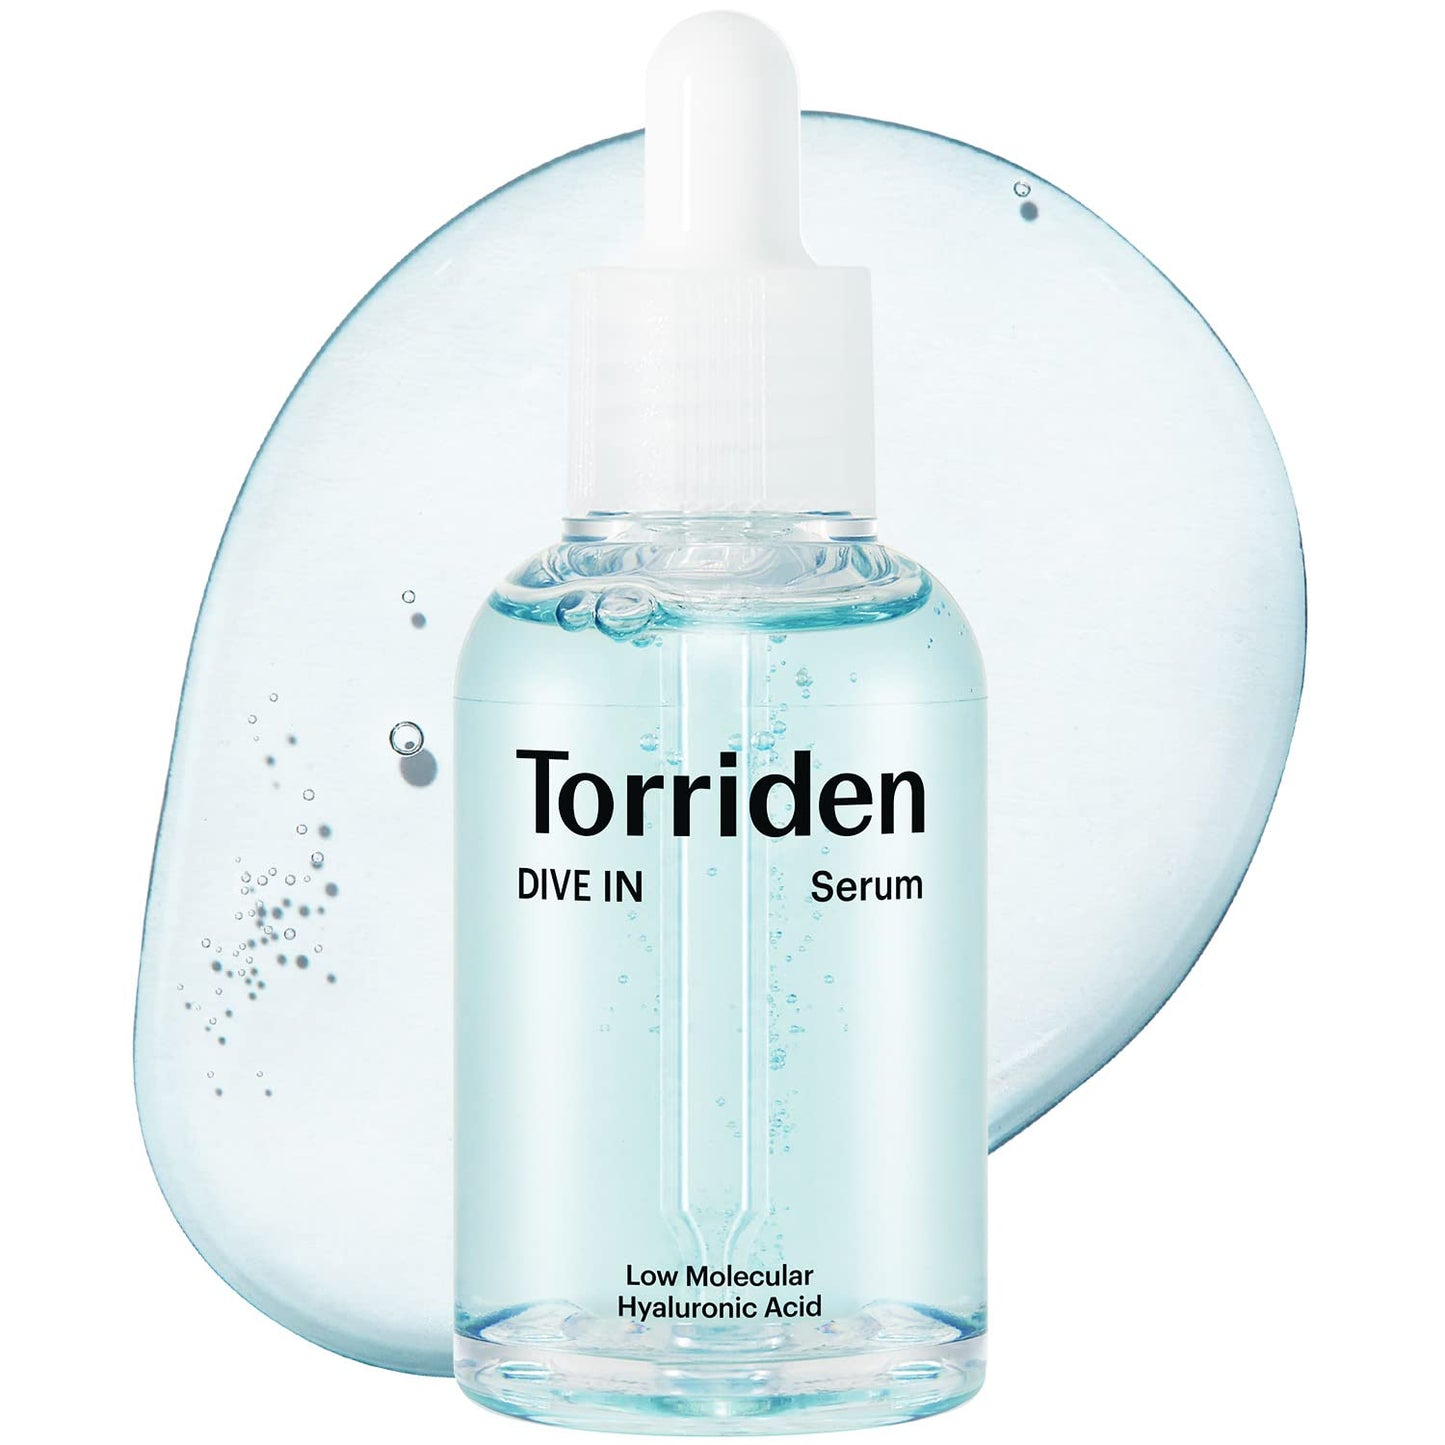 Torriden Dive-In Low-Molecular Hyaluronic Acid Serum